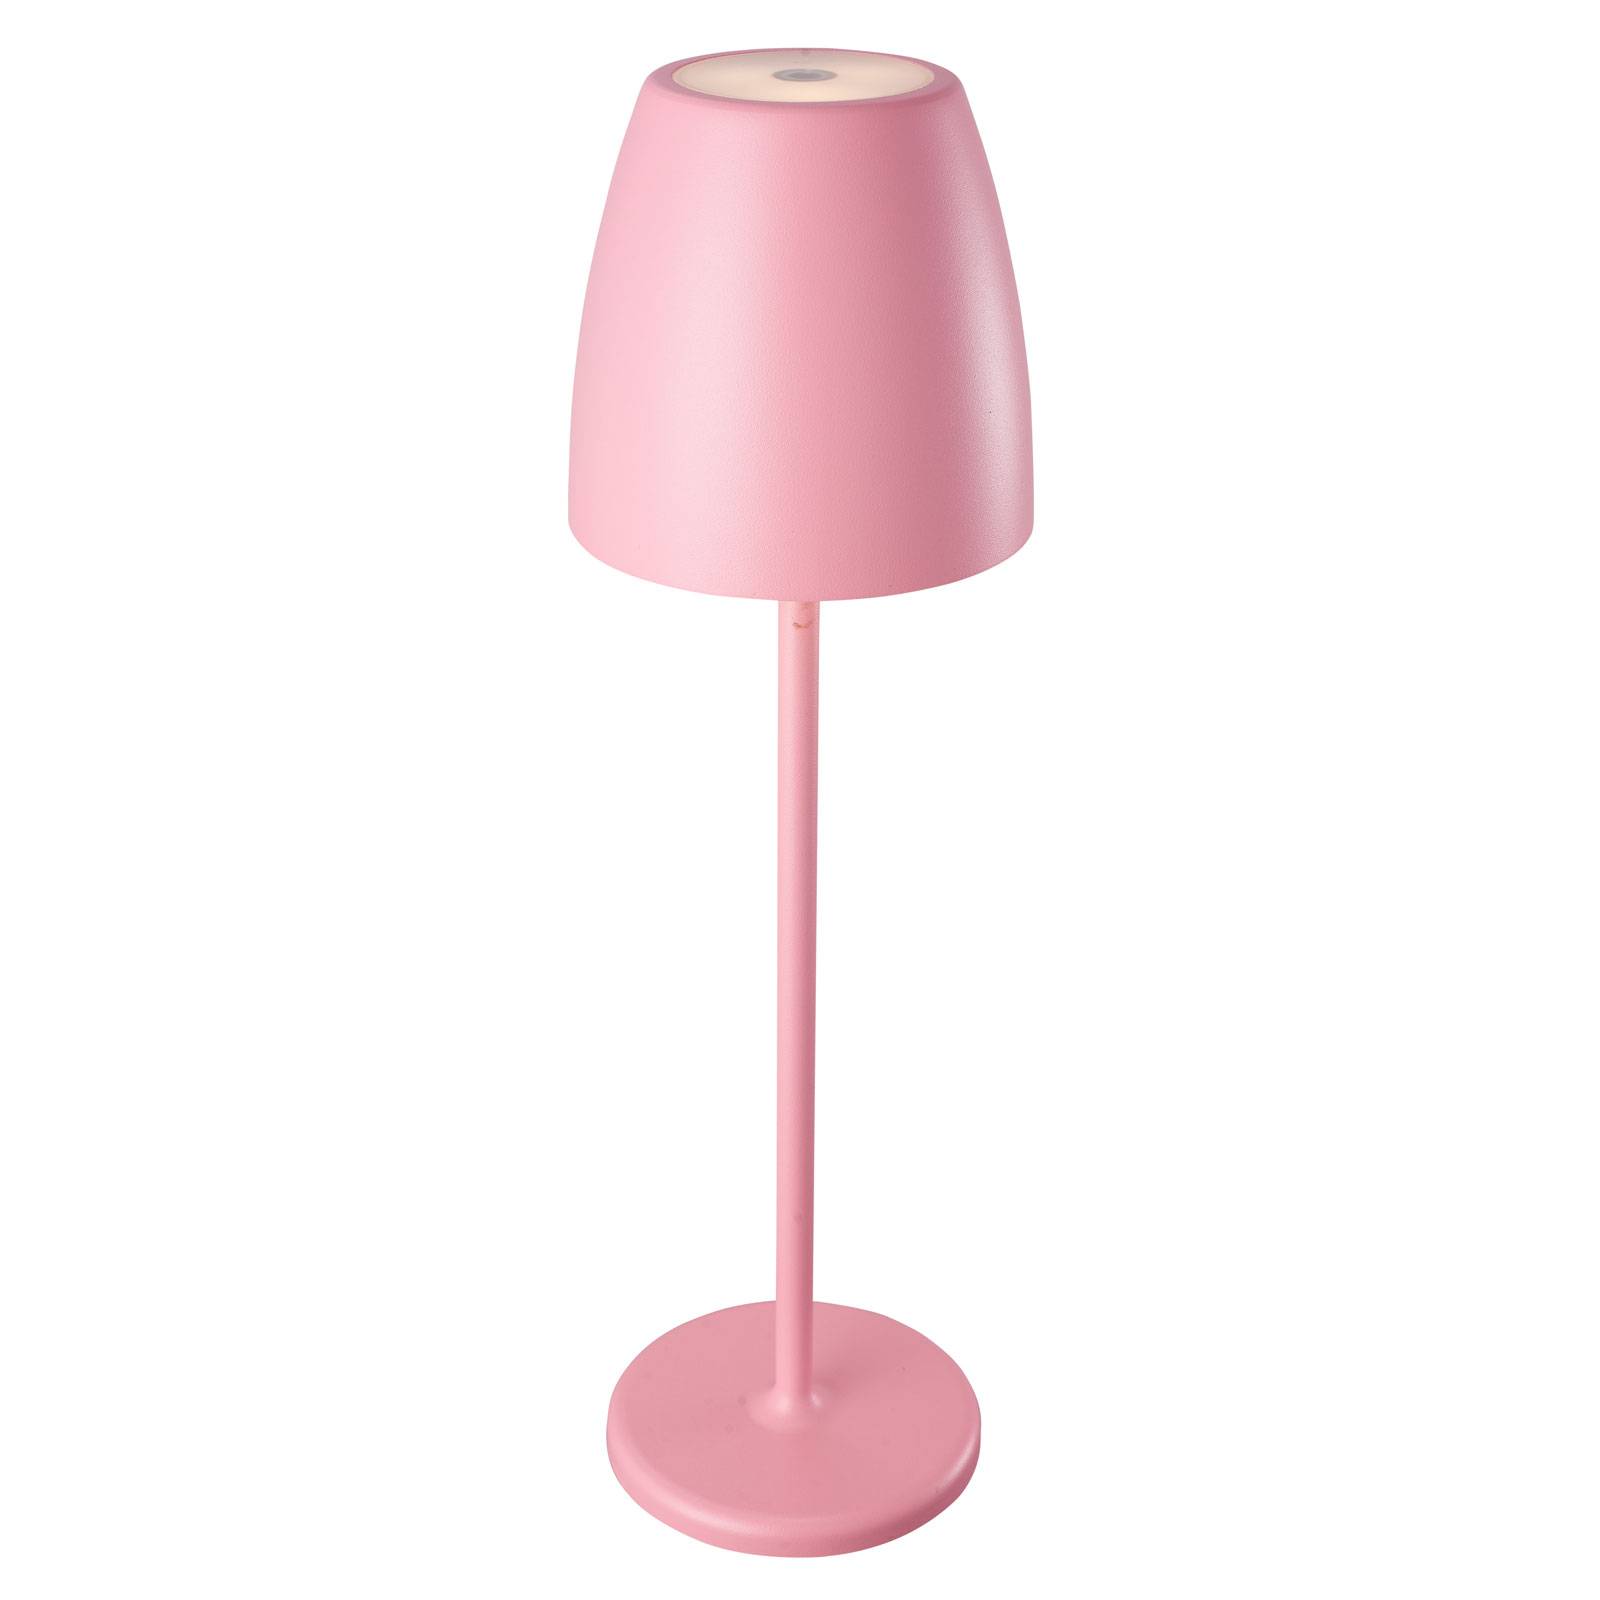 Megatron Tavola LED-batteribordlampe rosa